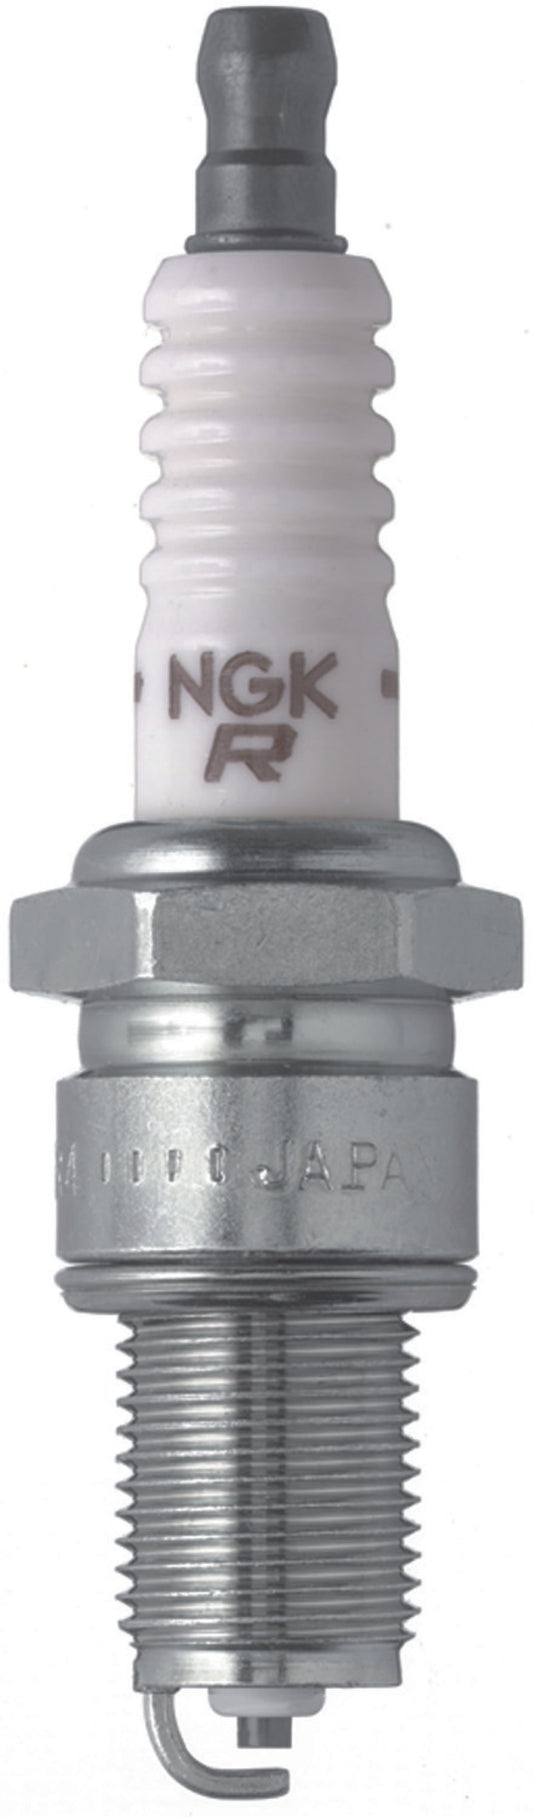 NGK Standard Spark Plug Box of 4 (BPR5ES SOLID)